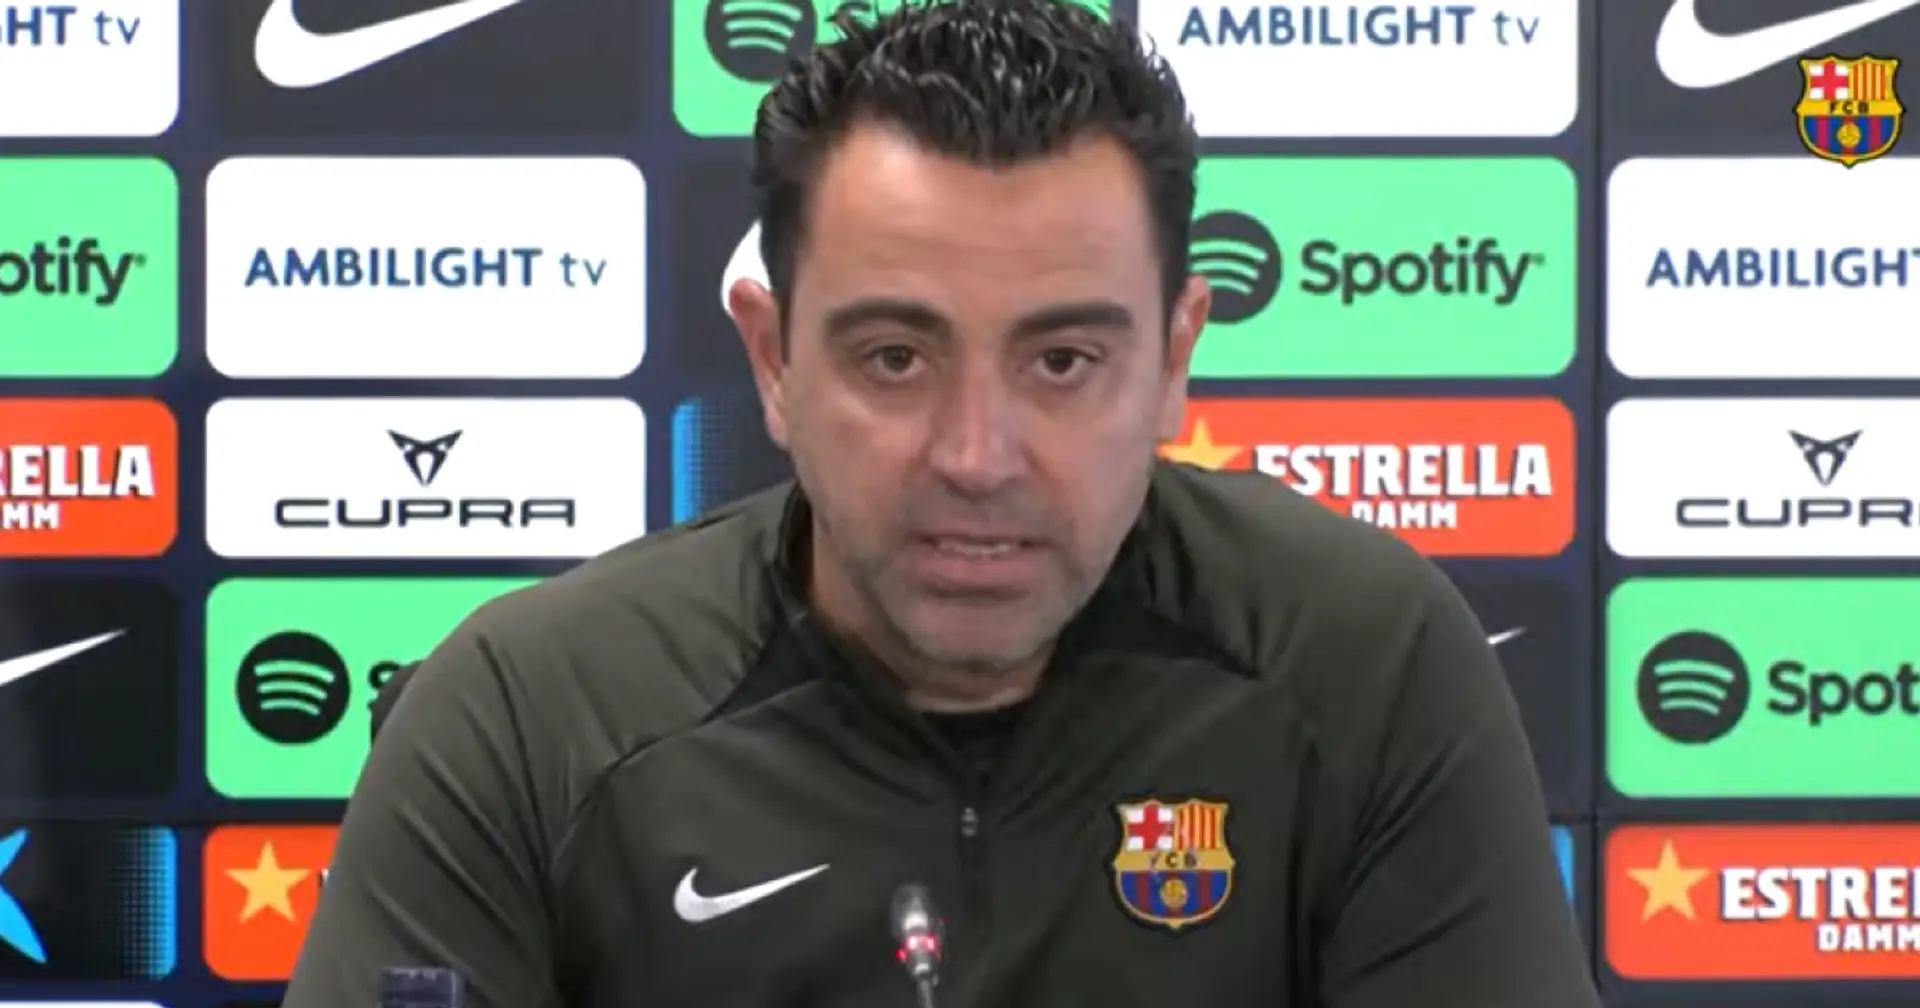 "Tout le monde le sait": Xavi explique pourquoi il a décidé de rester entraîneur du Barça